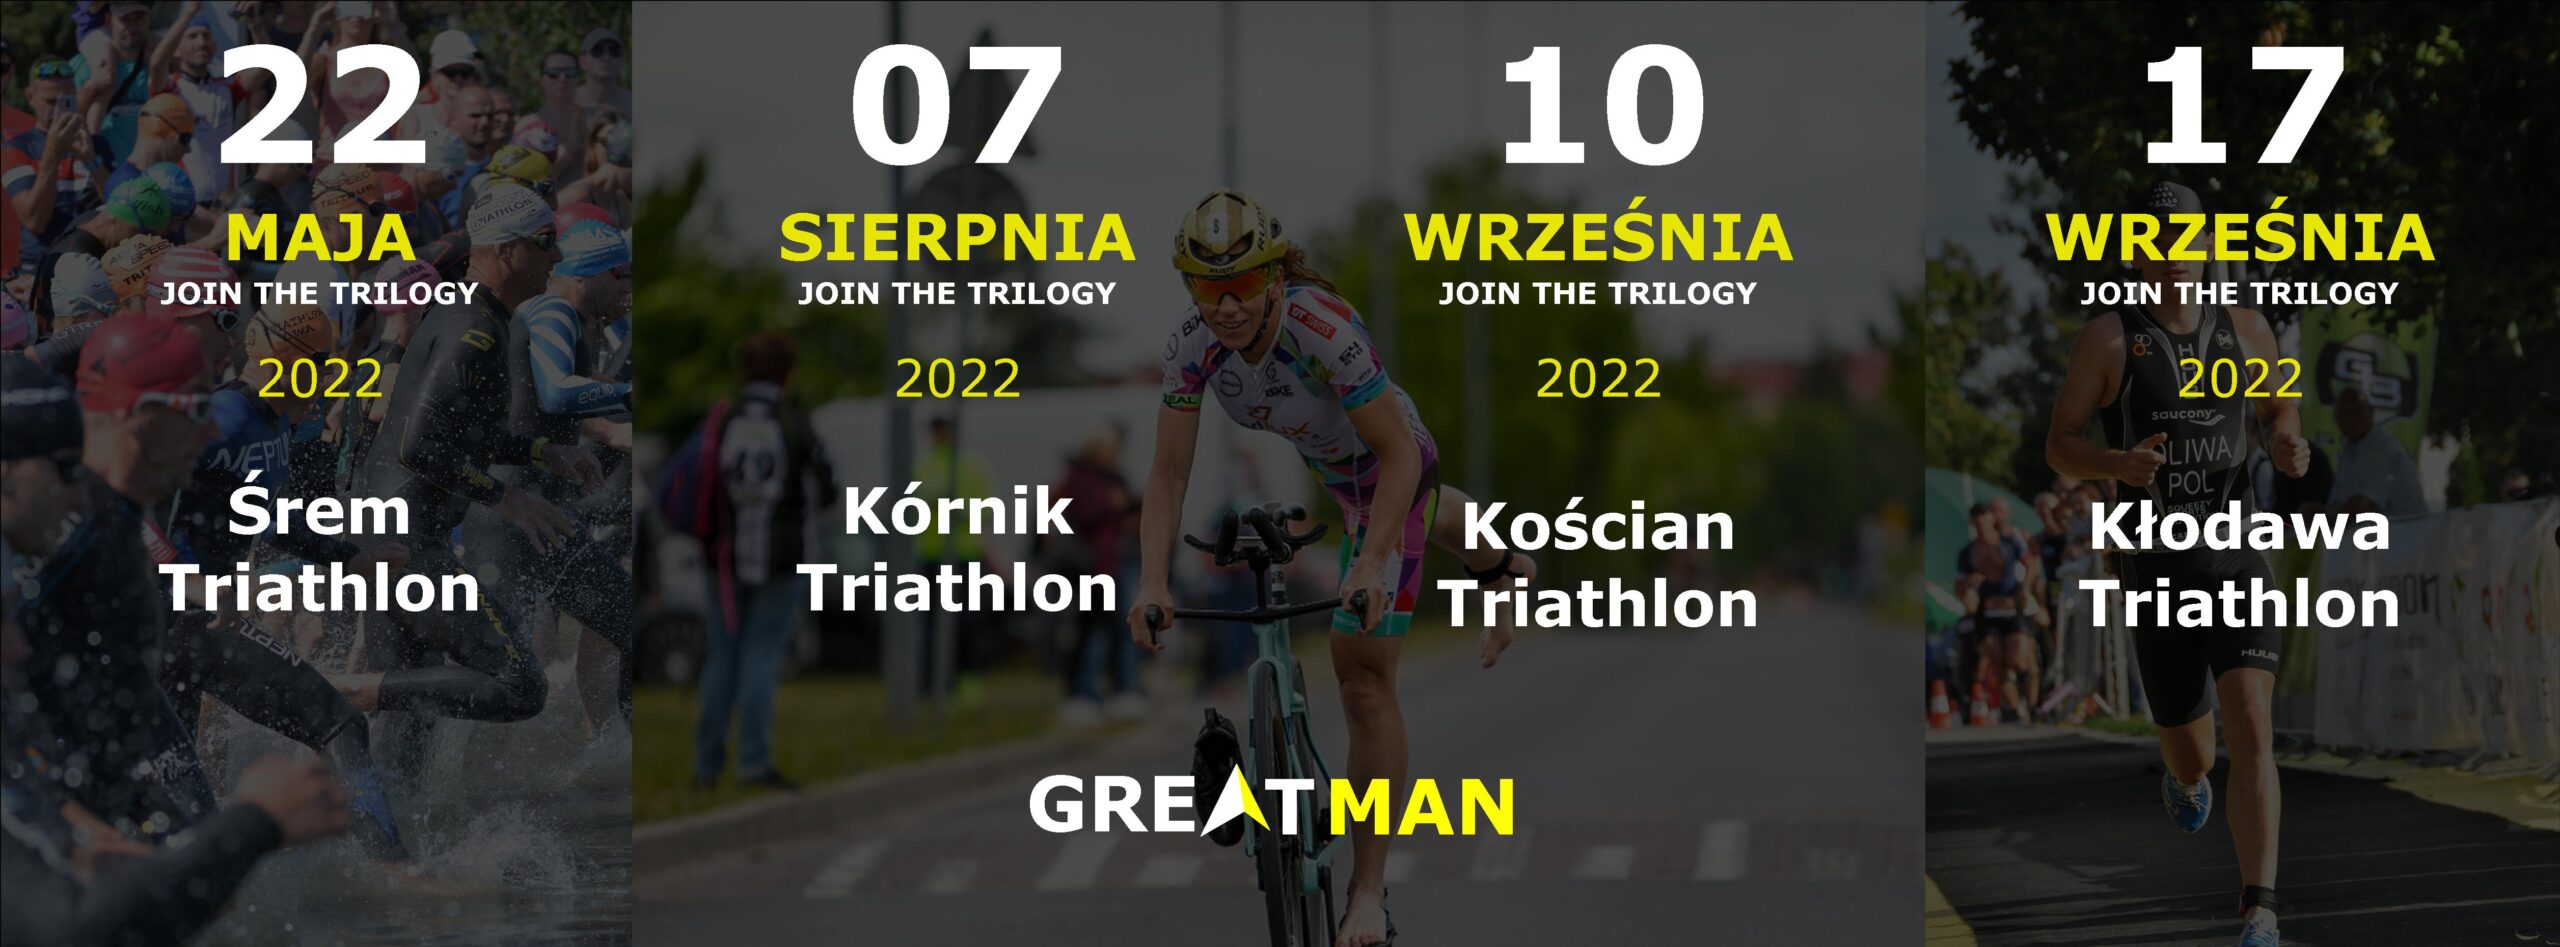 Greatman Triathlon - cykl 2022